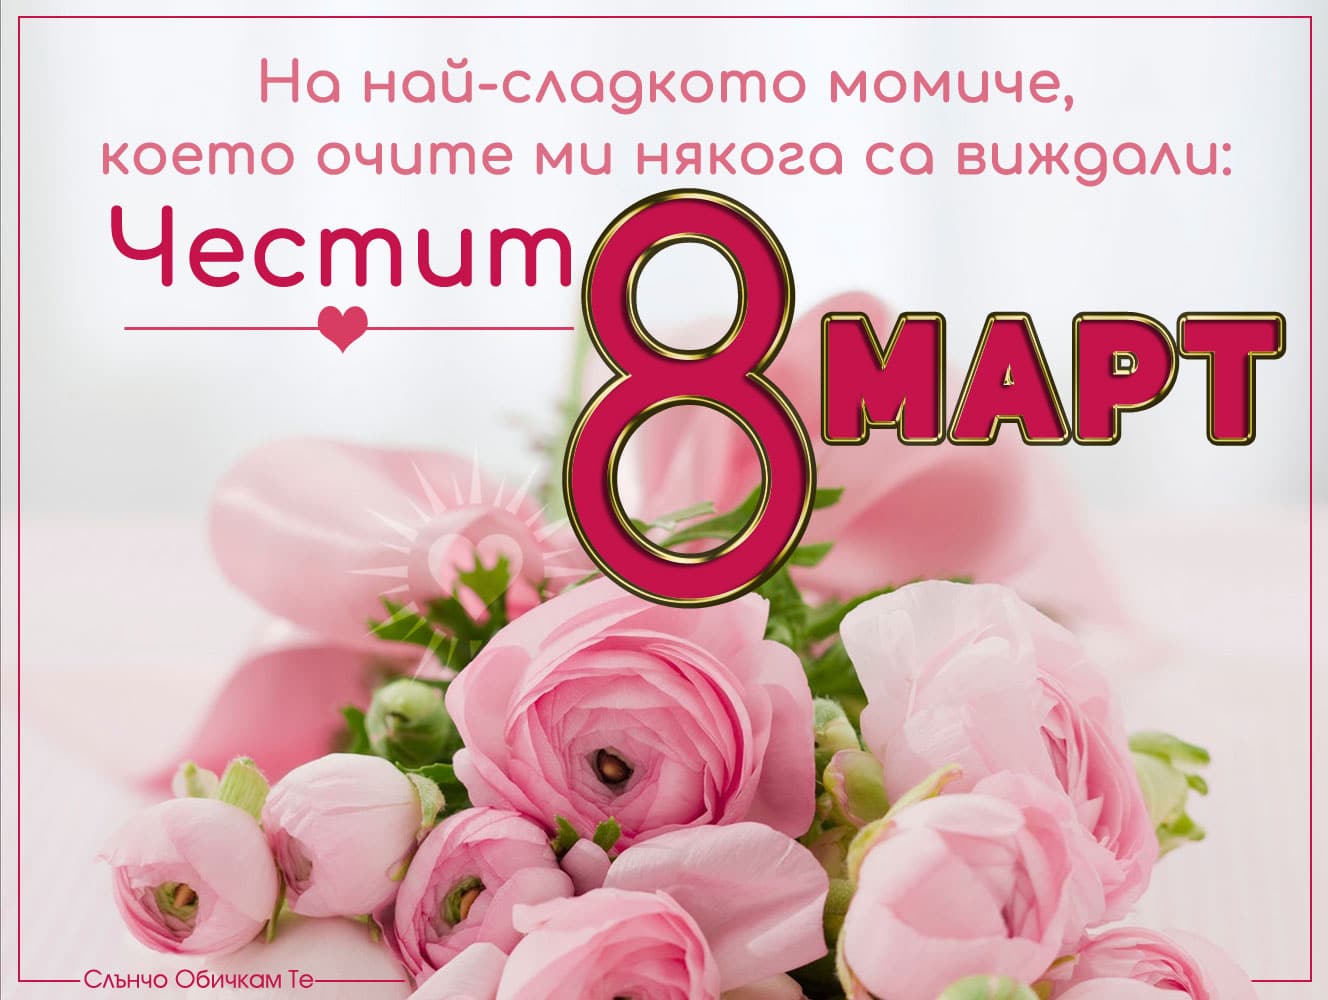 Честит 8 март на най-сладкото момиче, картички за 8 март, пожелания за 8 март, международен ден на жената, цветя, розови божури